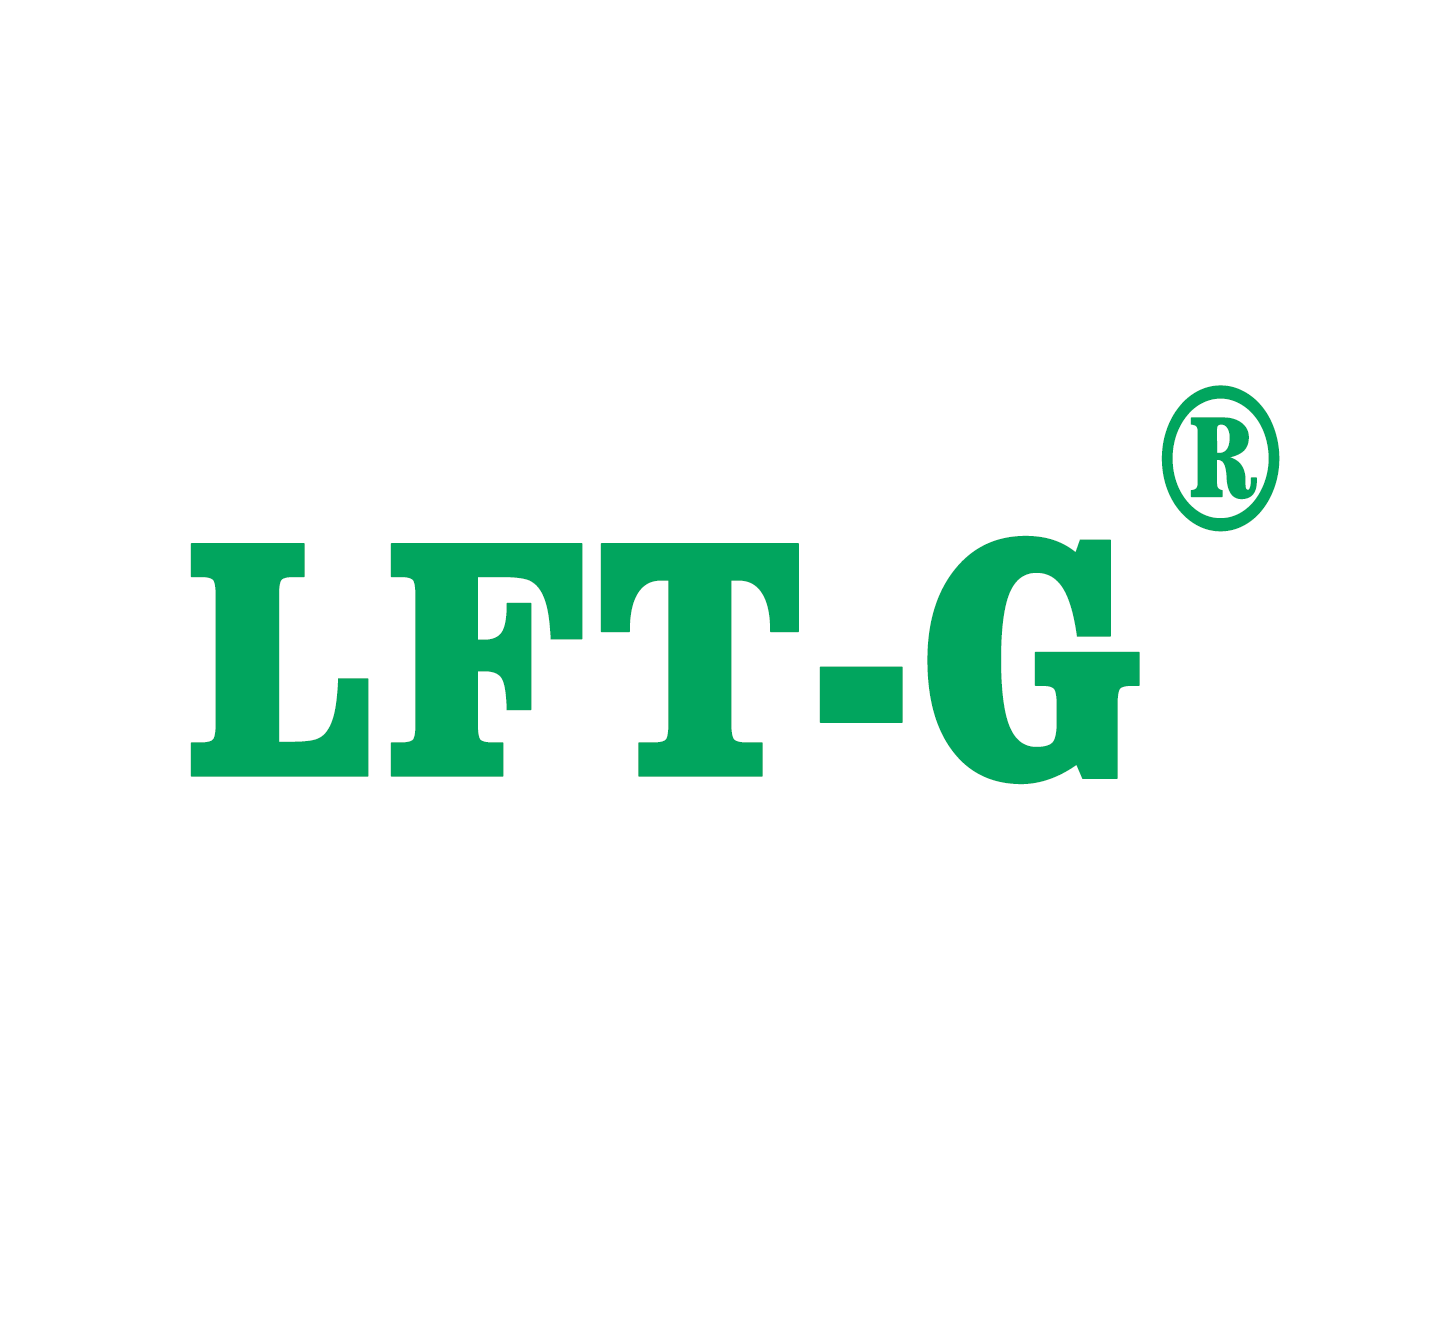  LFT-G Starten Sie eine neue Reise im neuen Jahr